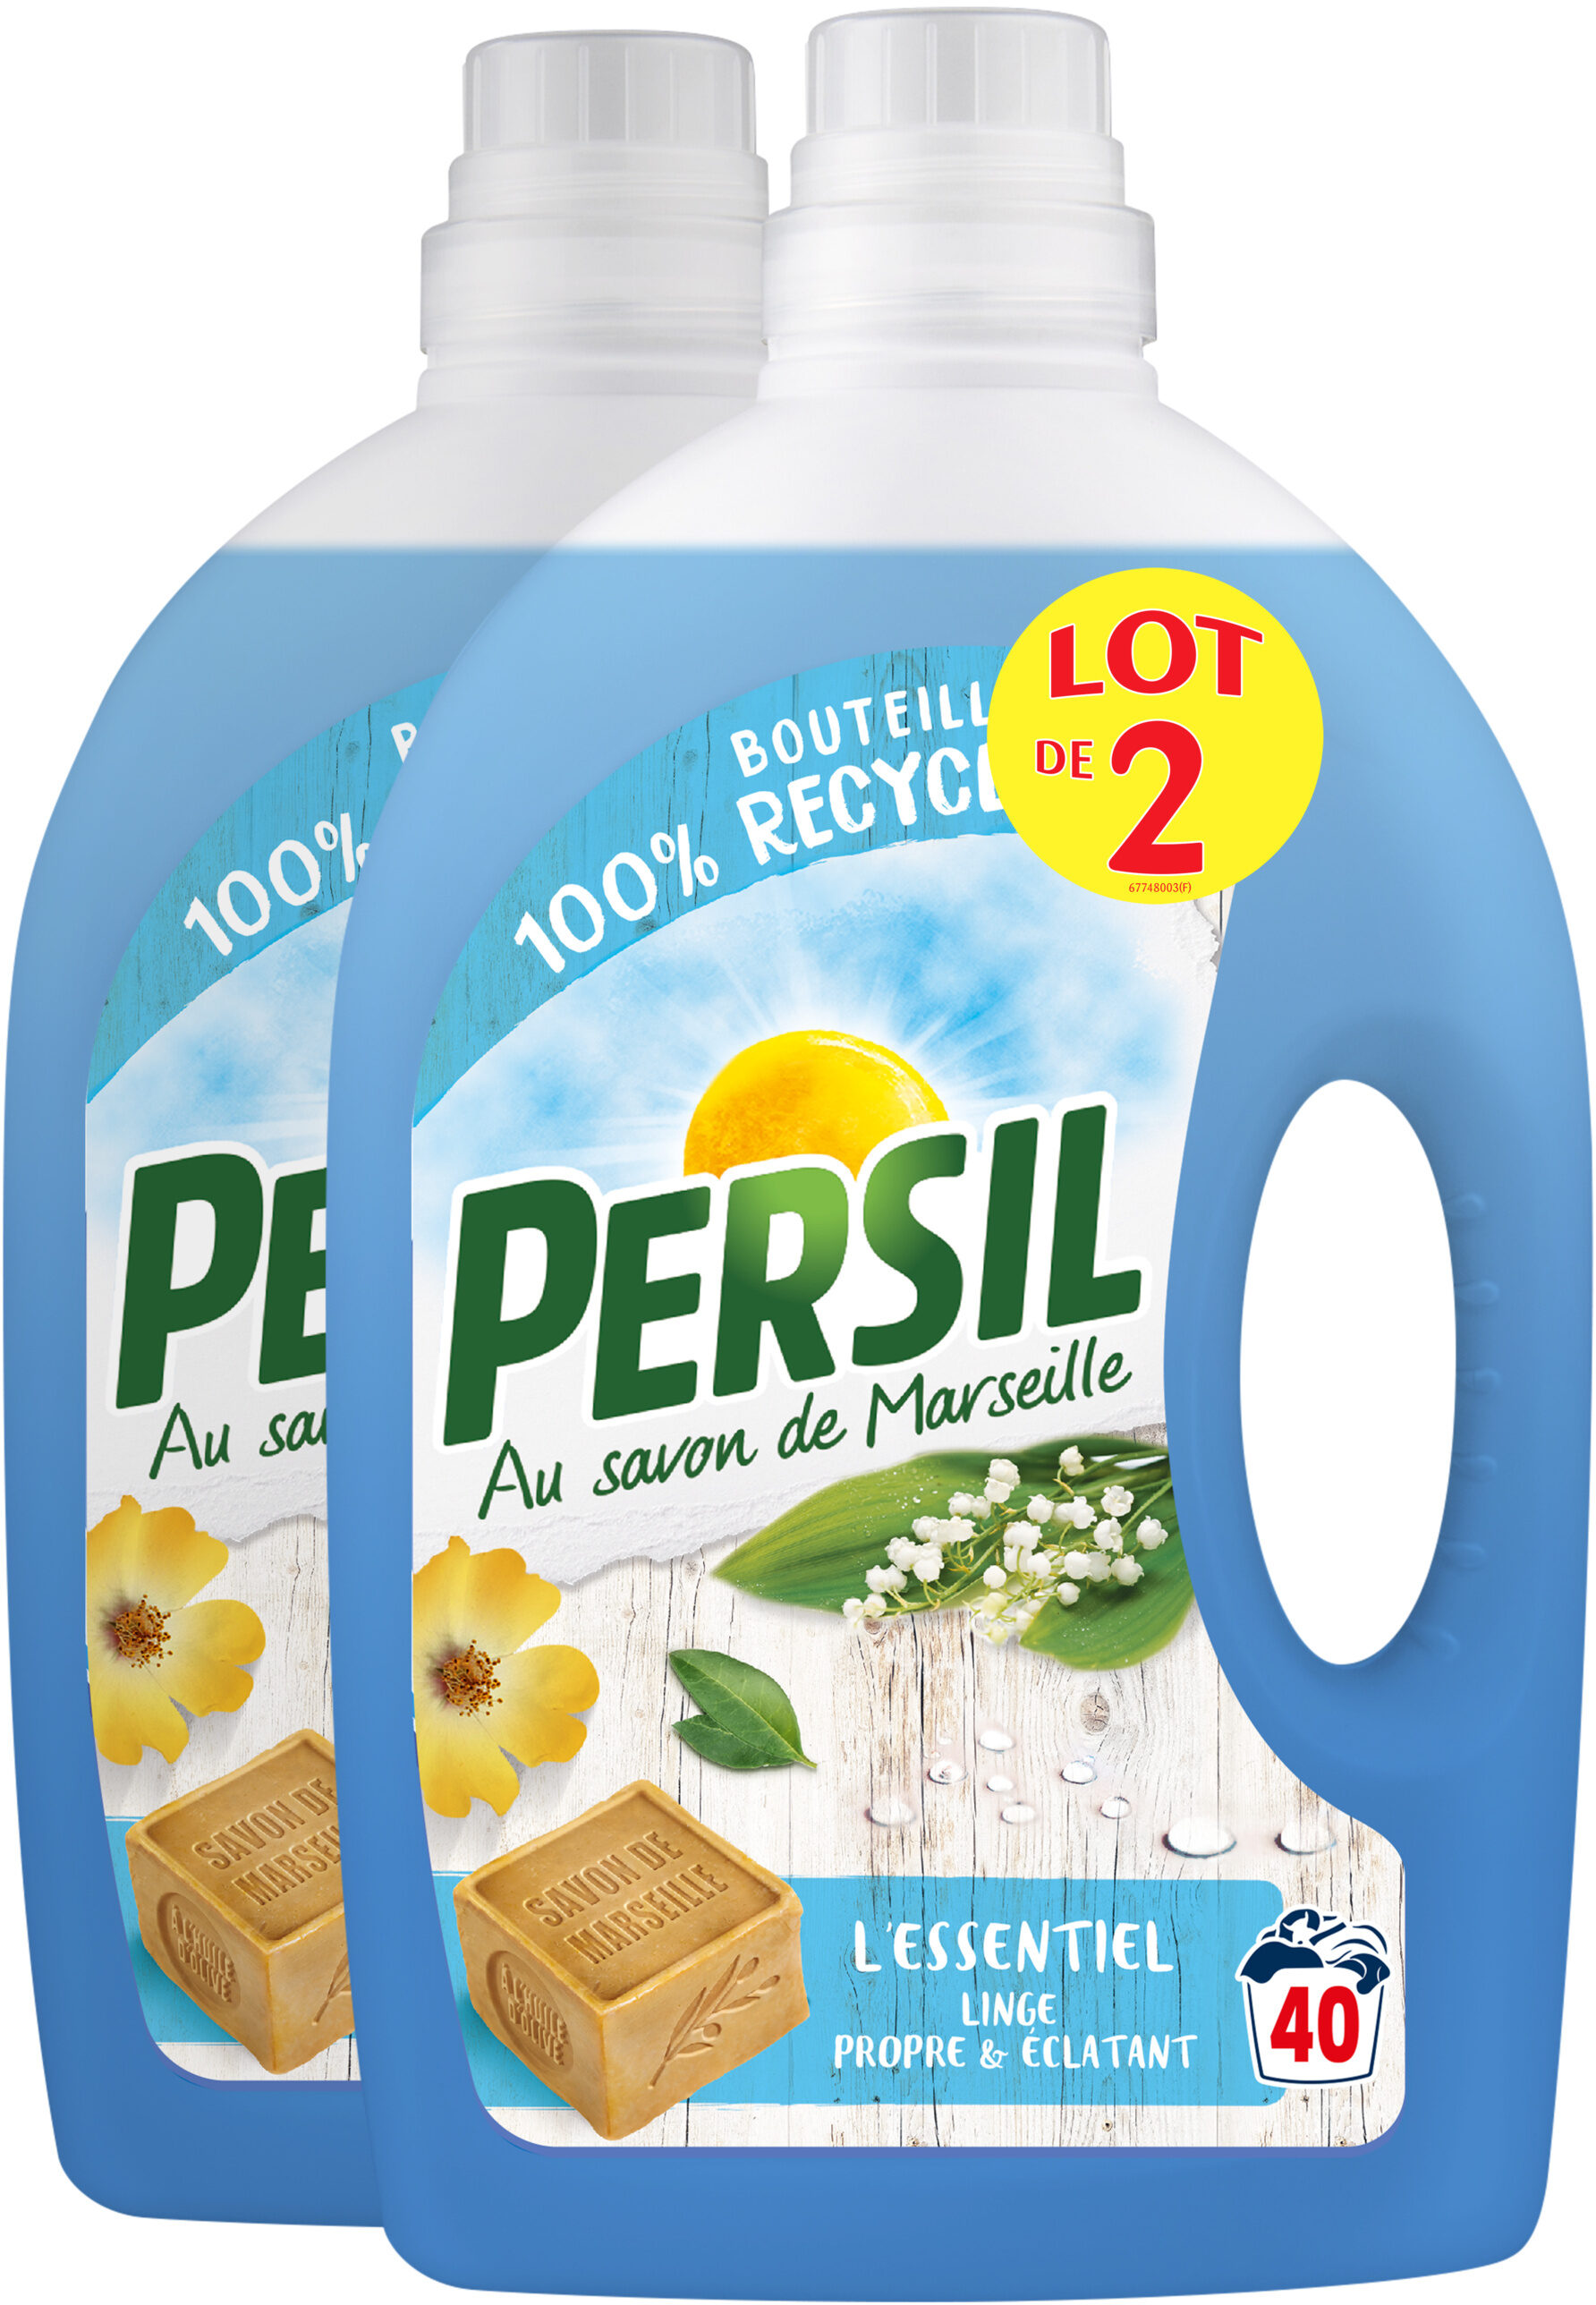 Persil Lessive Liquide l'Essentiel 2l 40 Lavages Lot de 2 - Product - fr